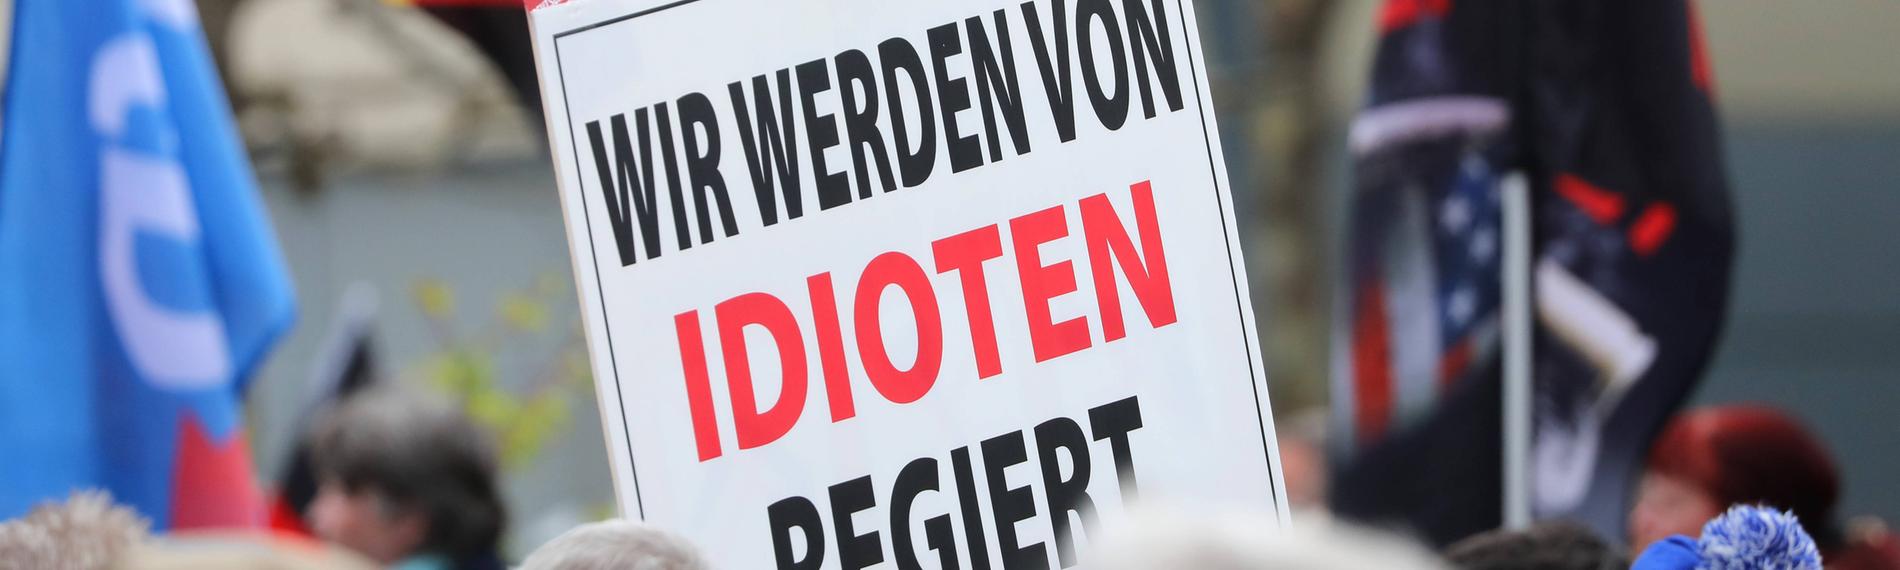 Plakat mit der Aufschrift "Wir werden von Idioten regiert" auf Demonstration der AfD in Erfurt